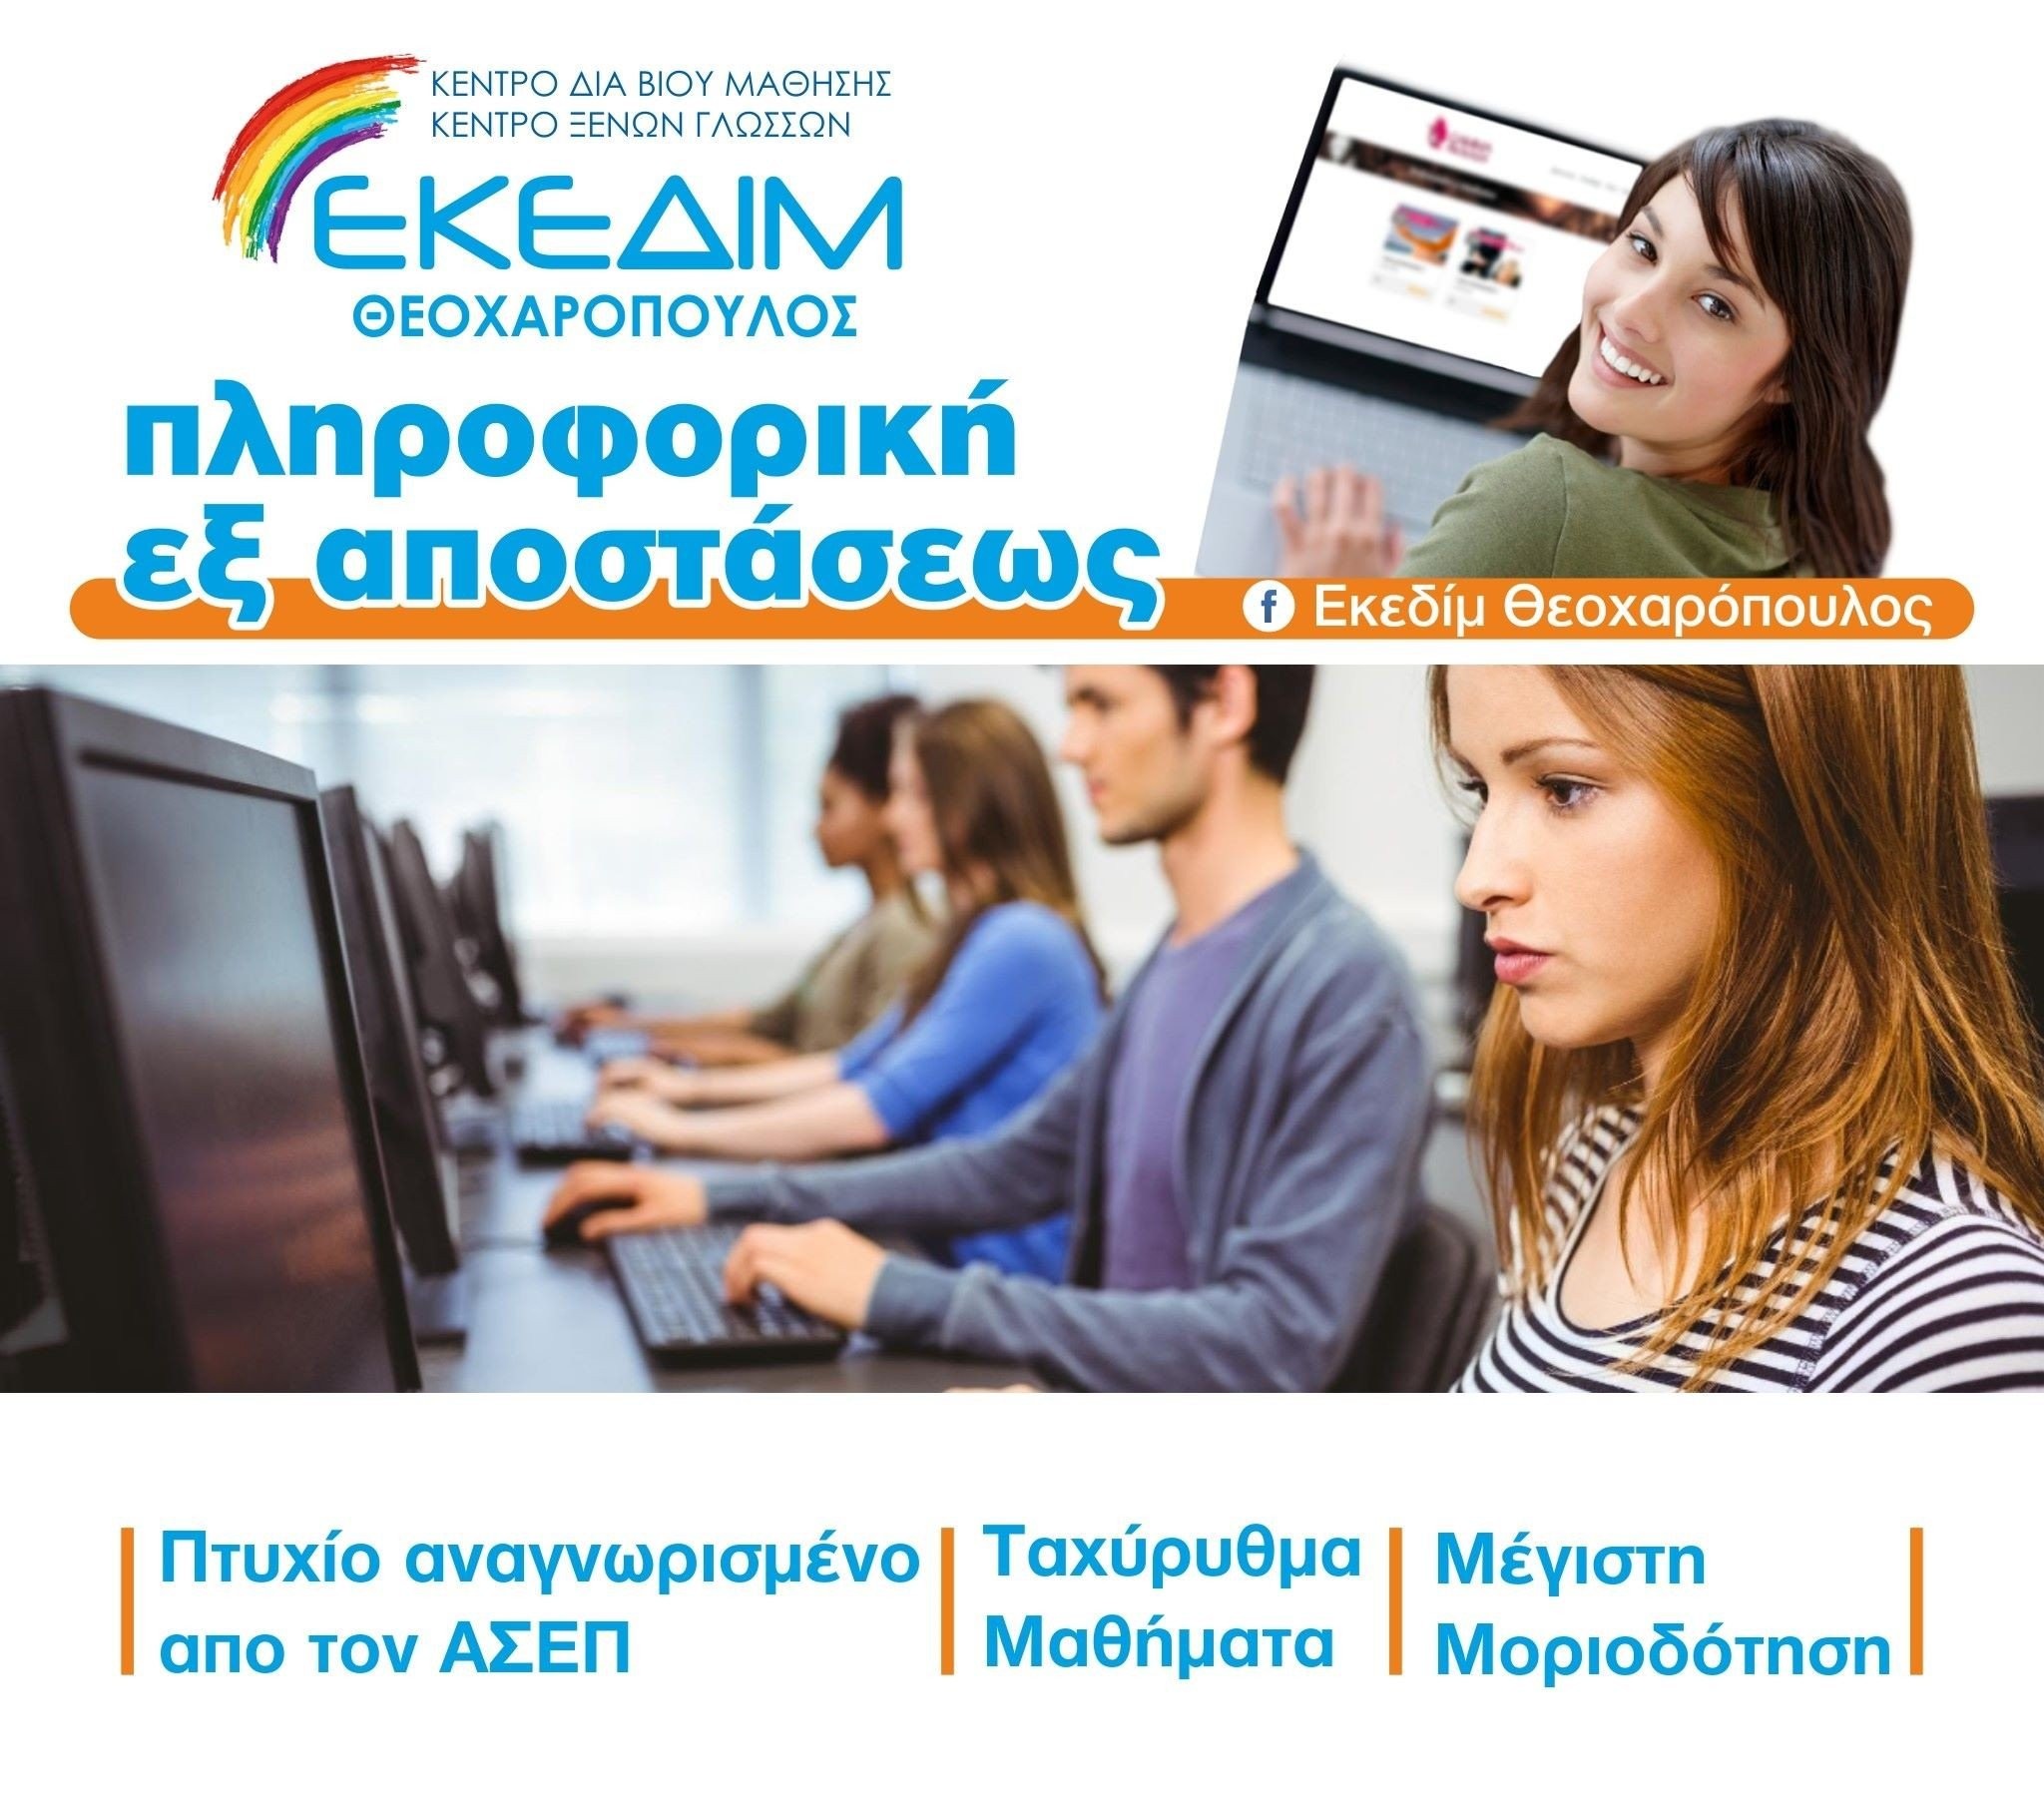 ΕΚΕΔΙΜ Θεοχαρόπουλος -Ταχύρυθμα μαθήματα πληροφορικής για απόκτηση πτυχίου αναγνωρισμένο από τον ΑΣΕΠ, μέσω του φορέα πιστοποίησης I-SKILLS